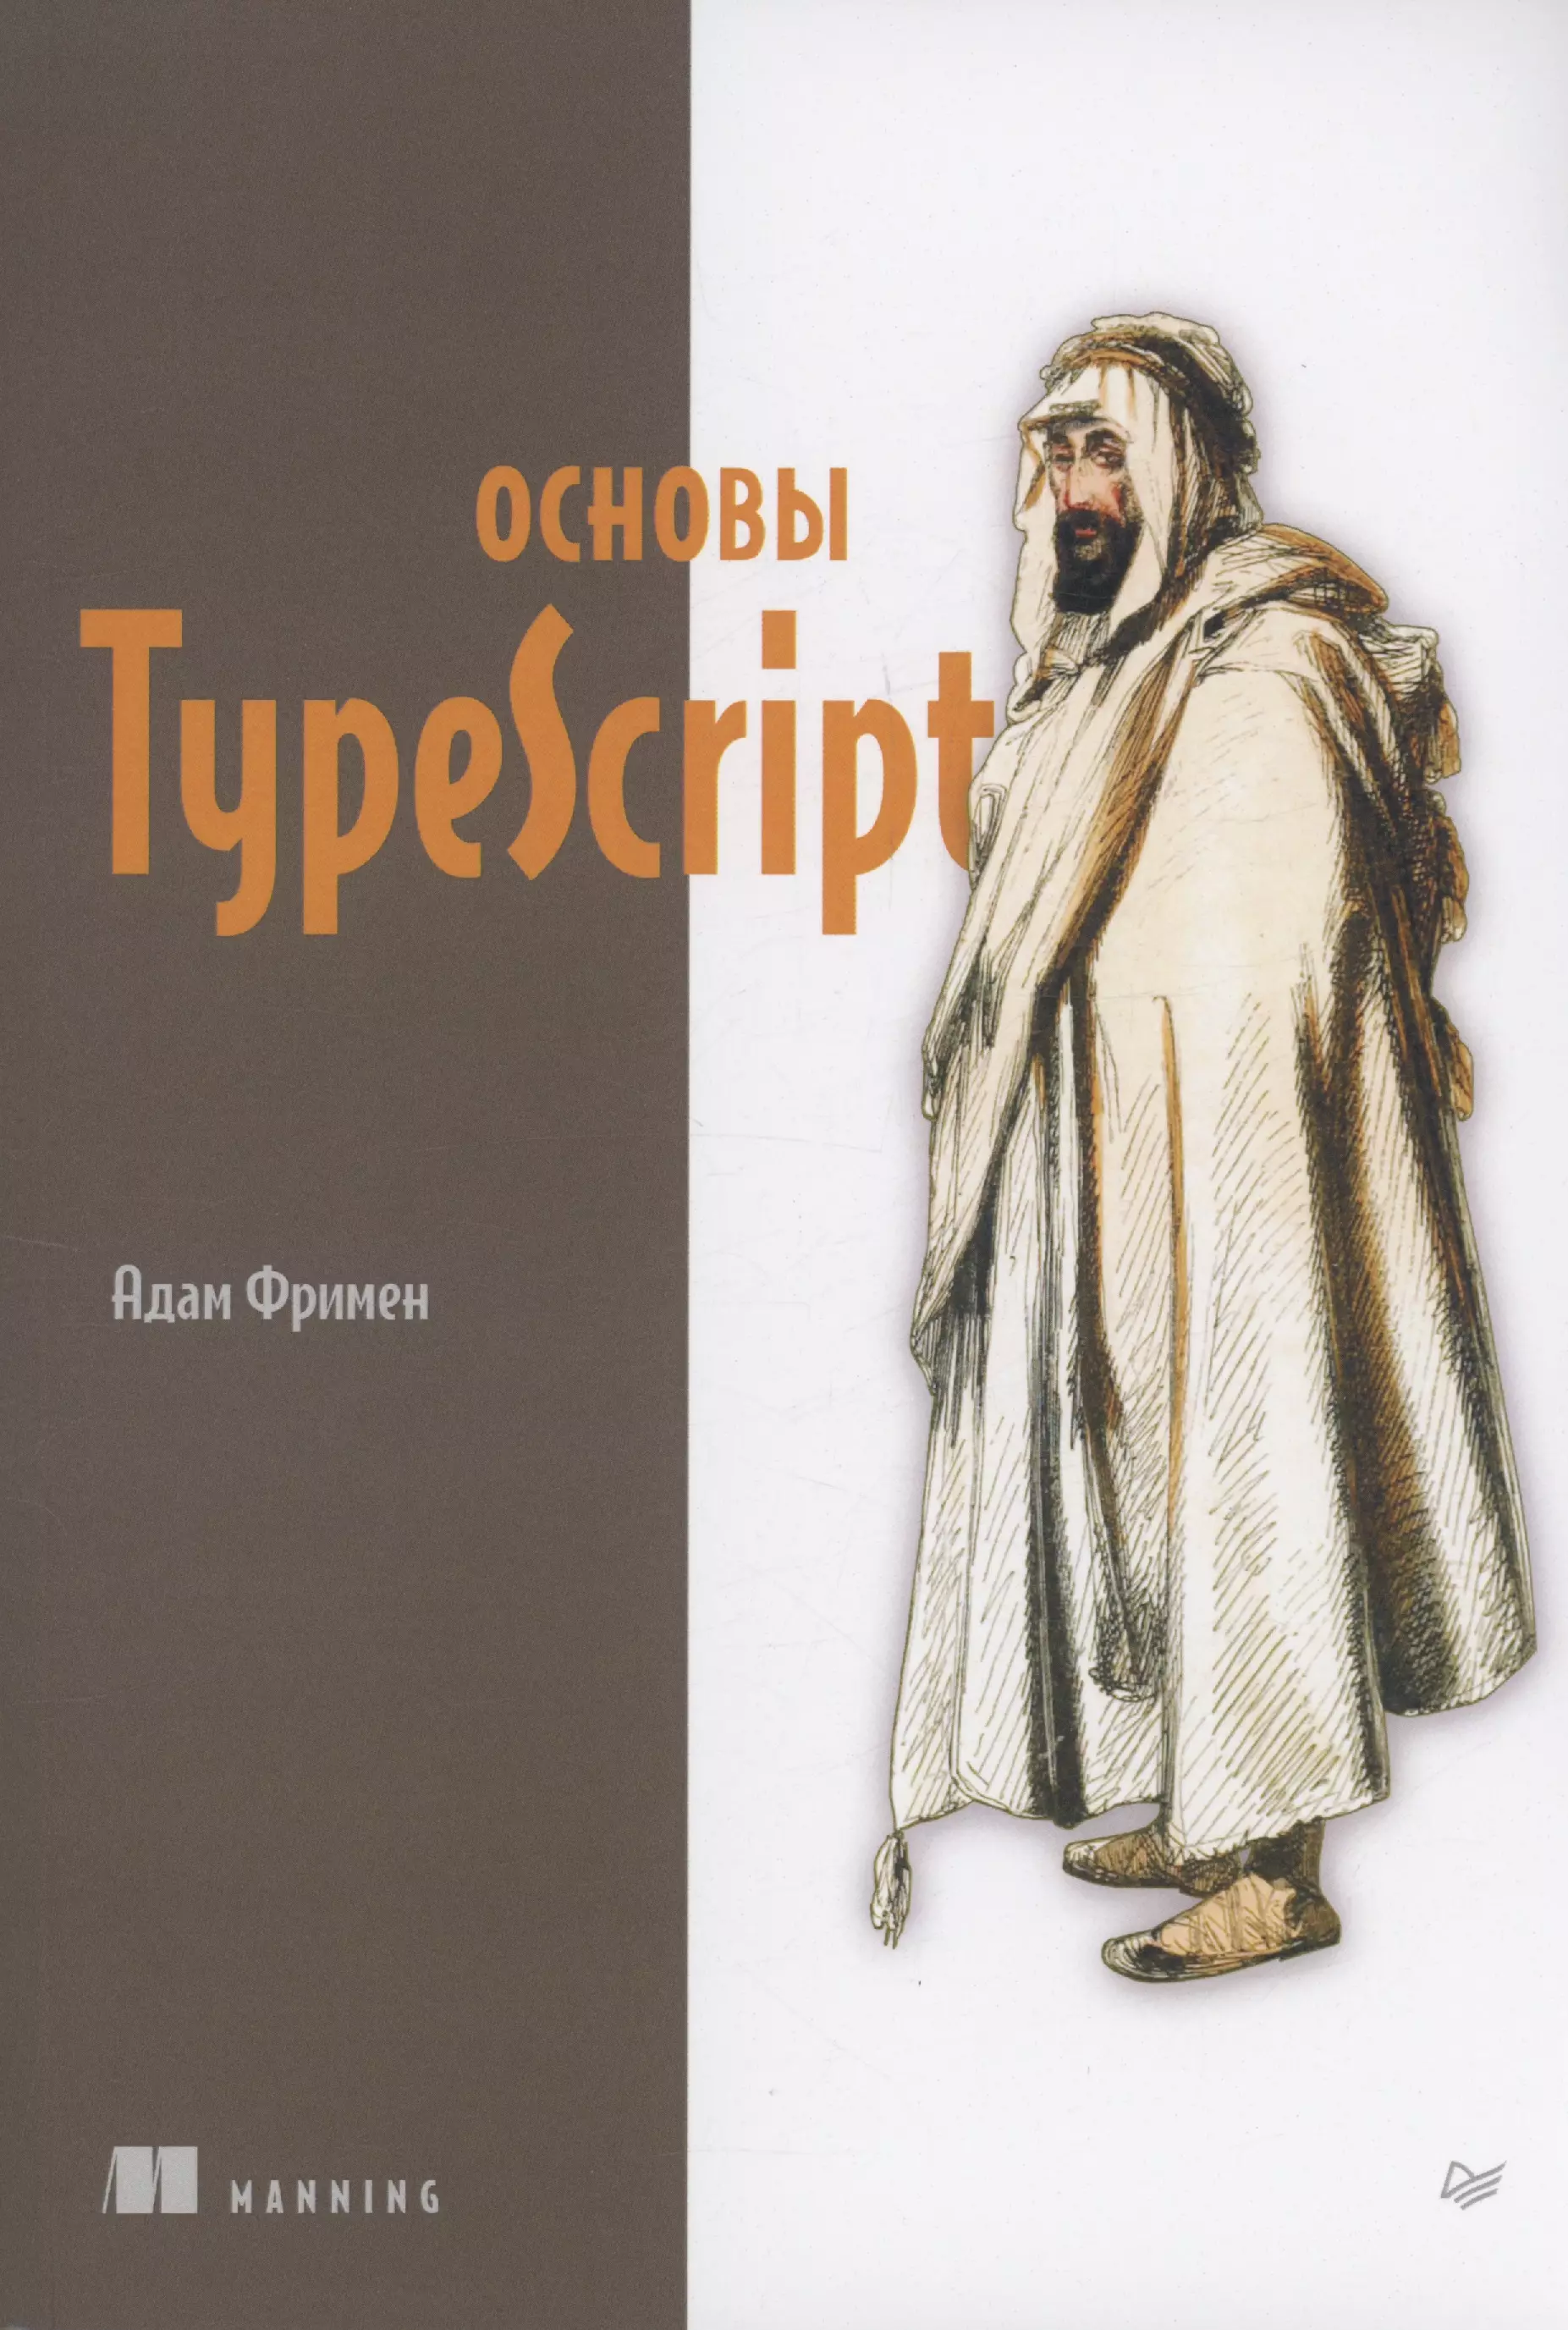 Фримен Адам Основы TypeScript файн яков typescript быстро